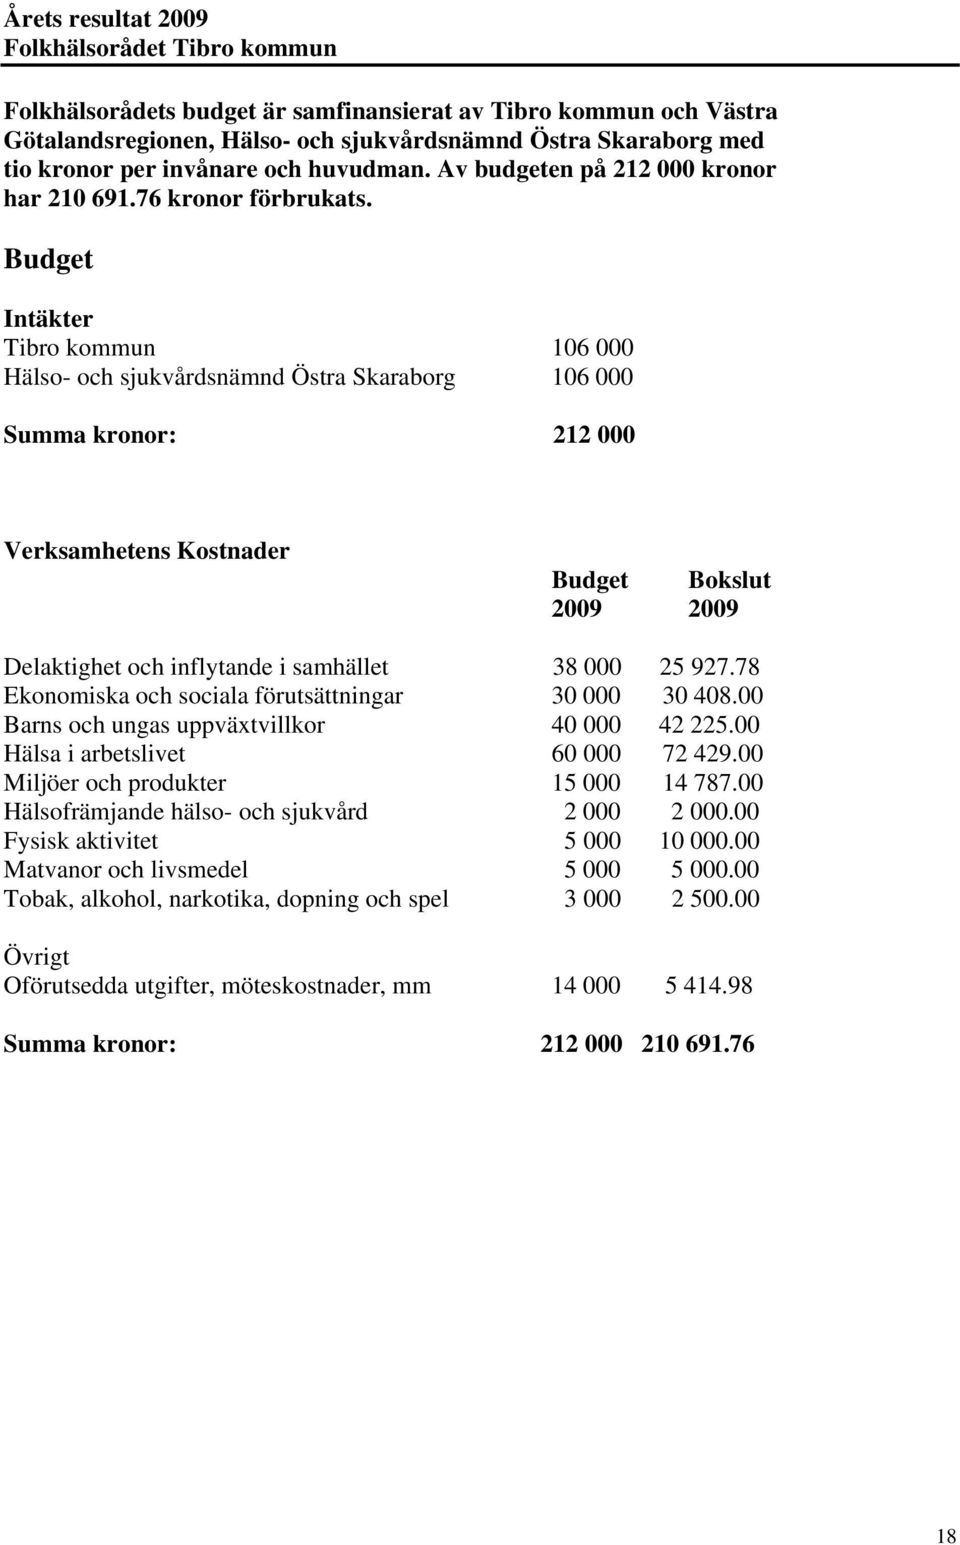 Budget Intäkter Tibro kommun 106 000 Hälso- och sjukvårdsnämnd Östra Skaraborg 106 000 Summa kronor: 212 000 Verksamhetens Kostnader Budget Bokslut 2009 2009 Delaktighet och inflytande i samhället 38